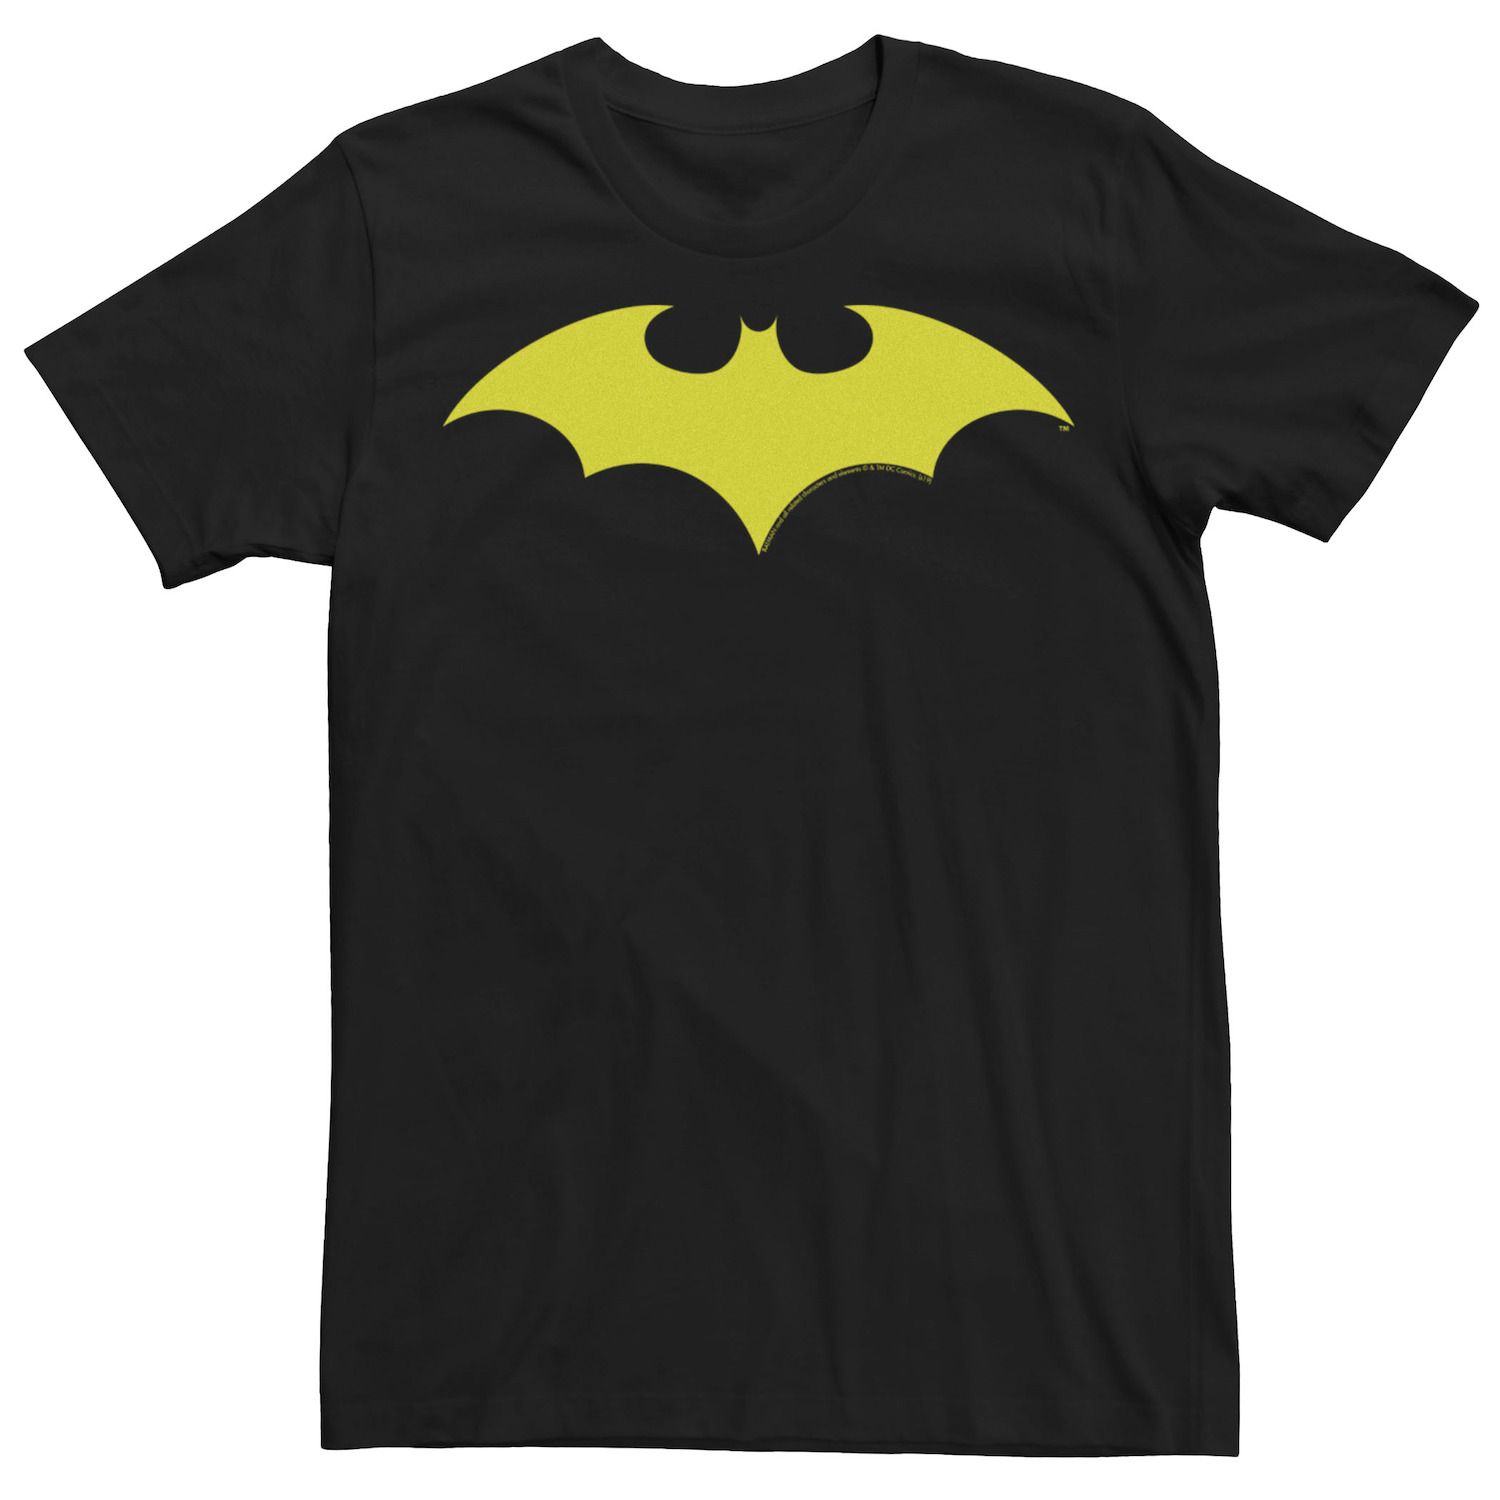 Мужская футболка с логотипом в стиле ретро в стиле Бэтмена Licensed Character